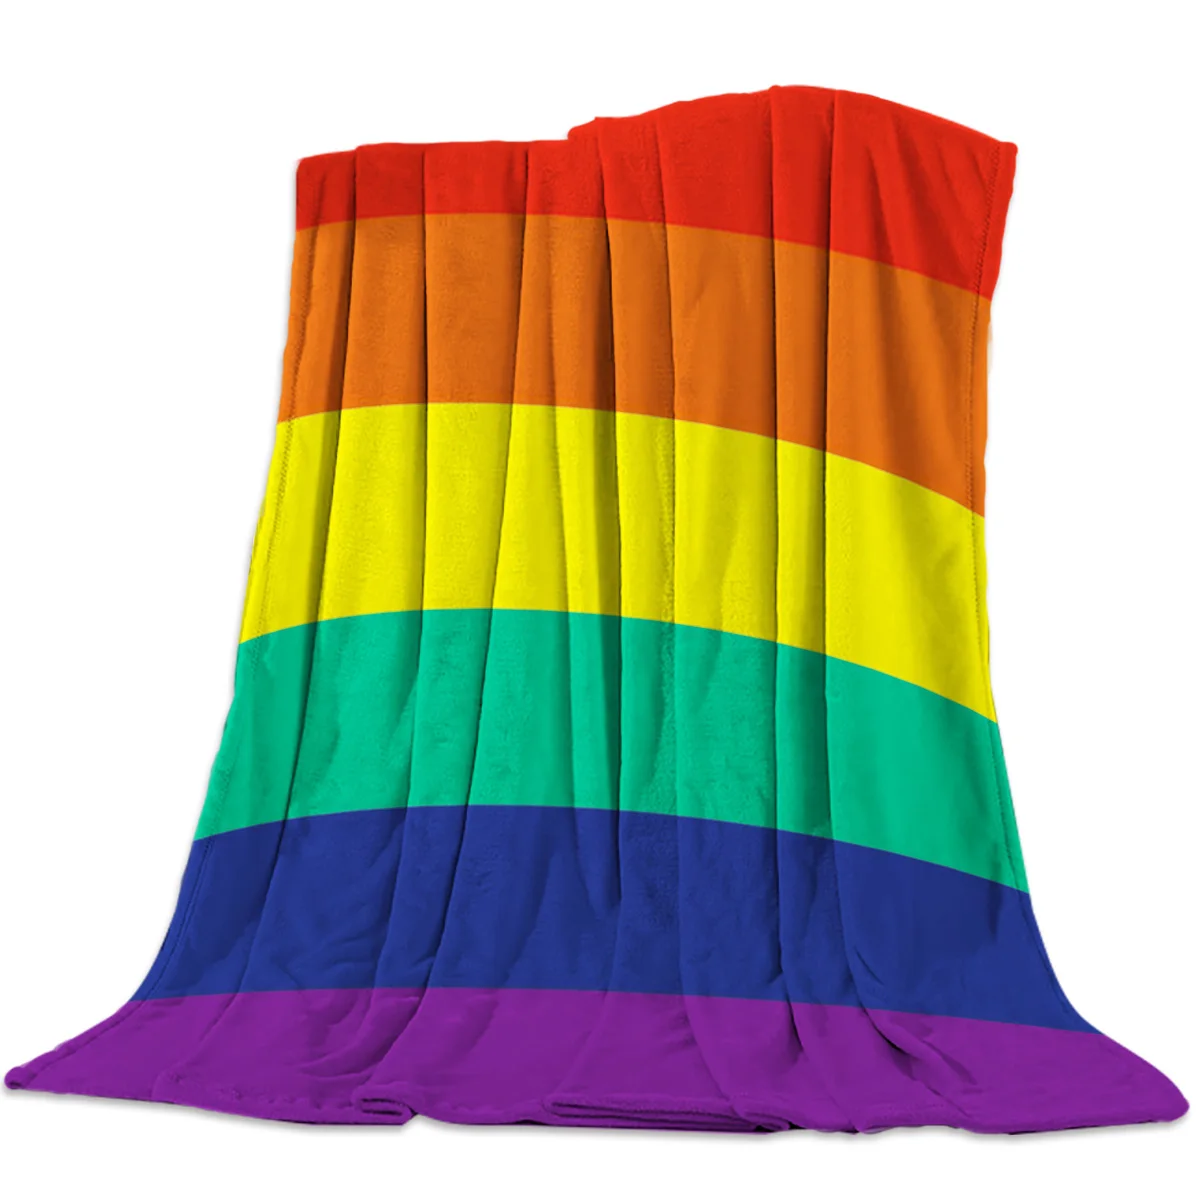 

Flanell Decken Bunte Streifen Stolz Regenbogen Decke Kissen Warme Wirft auf Sofa Bett Hause Bettdecke Reise Fleece Decke